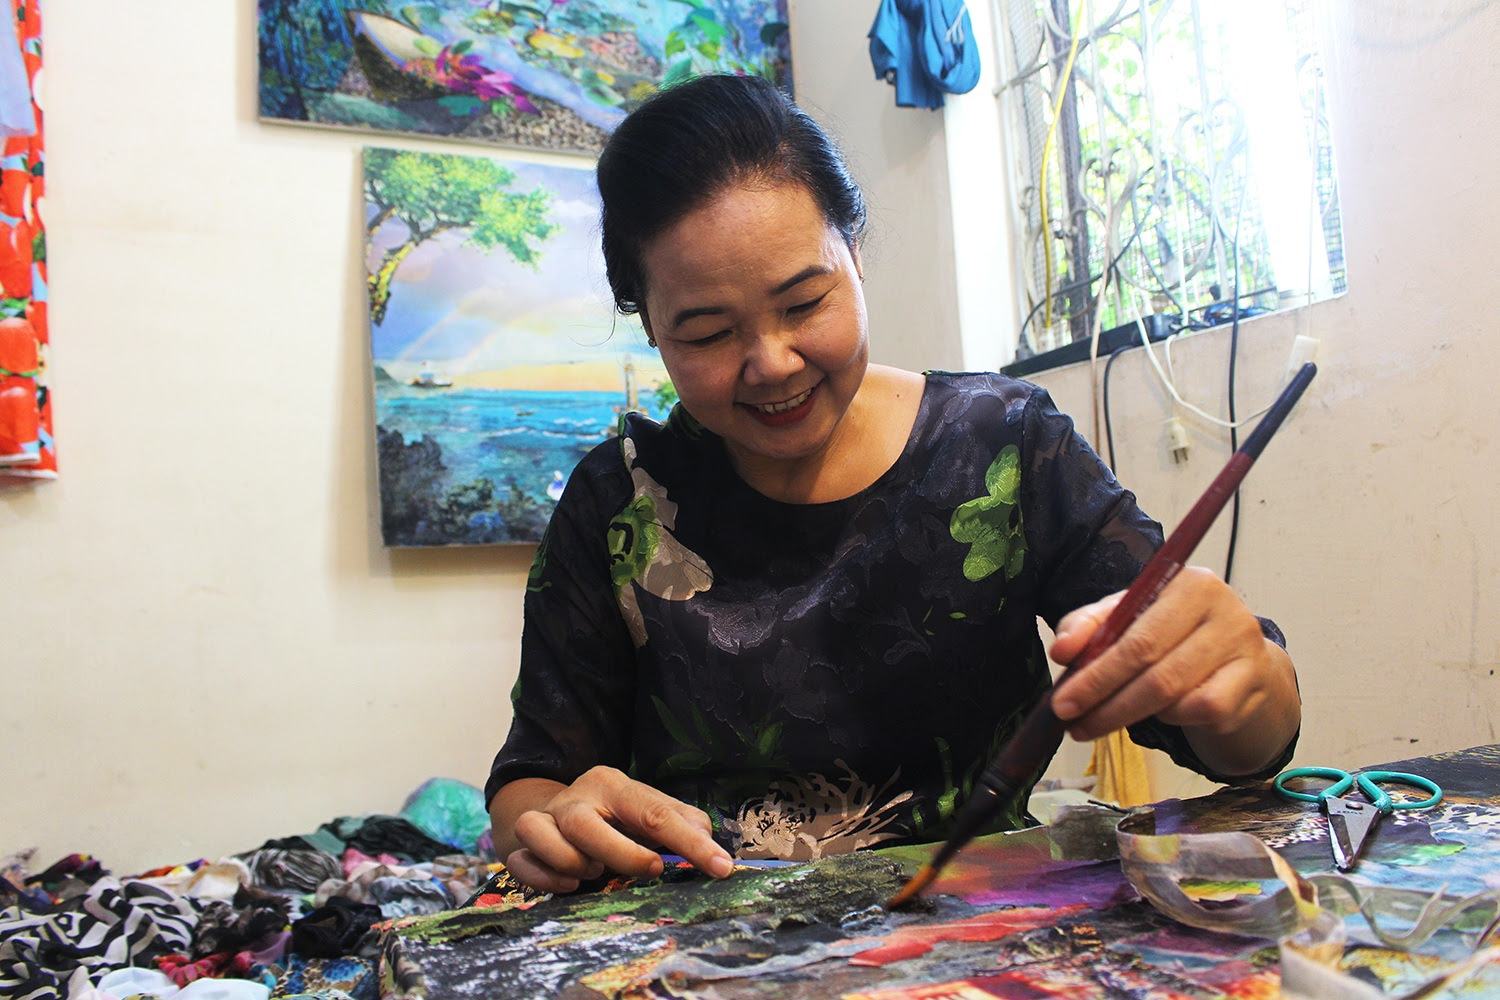 Lạ lùng cách nữ họa sỹ Hà Nội biến vải vụn thành
tác phẩm nghìn đô - 1